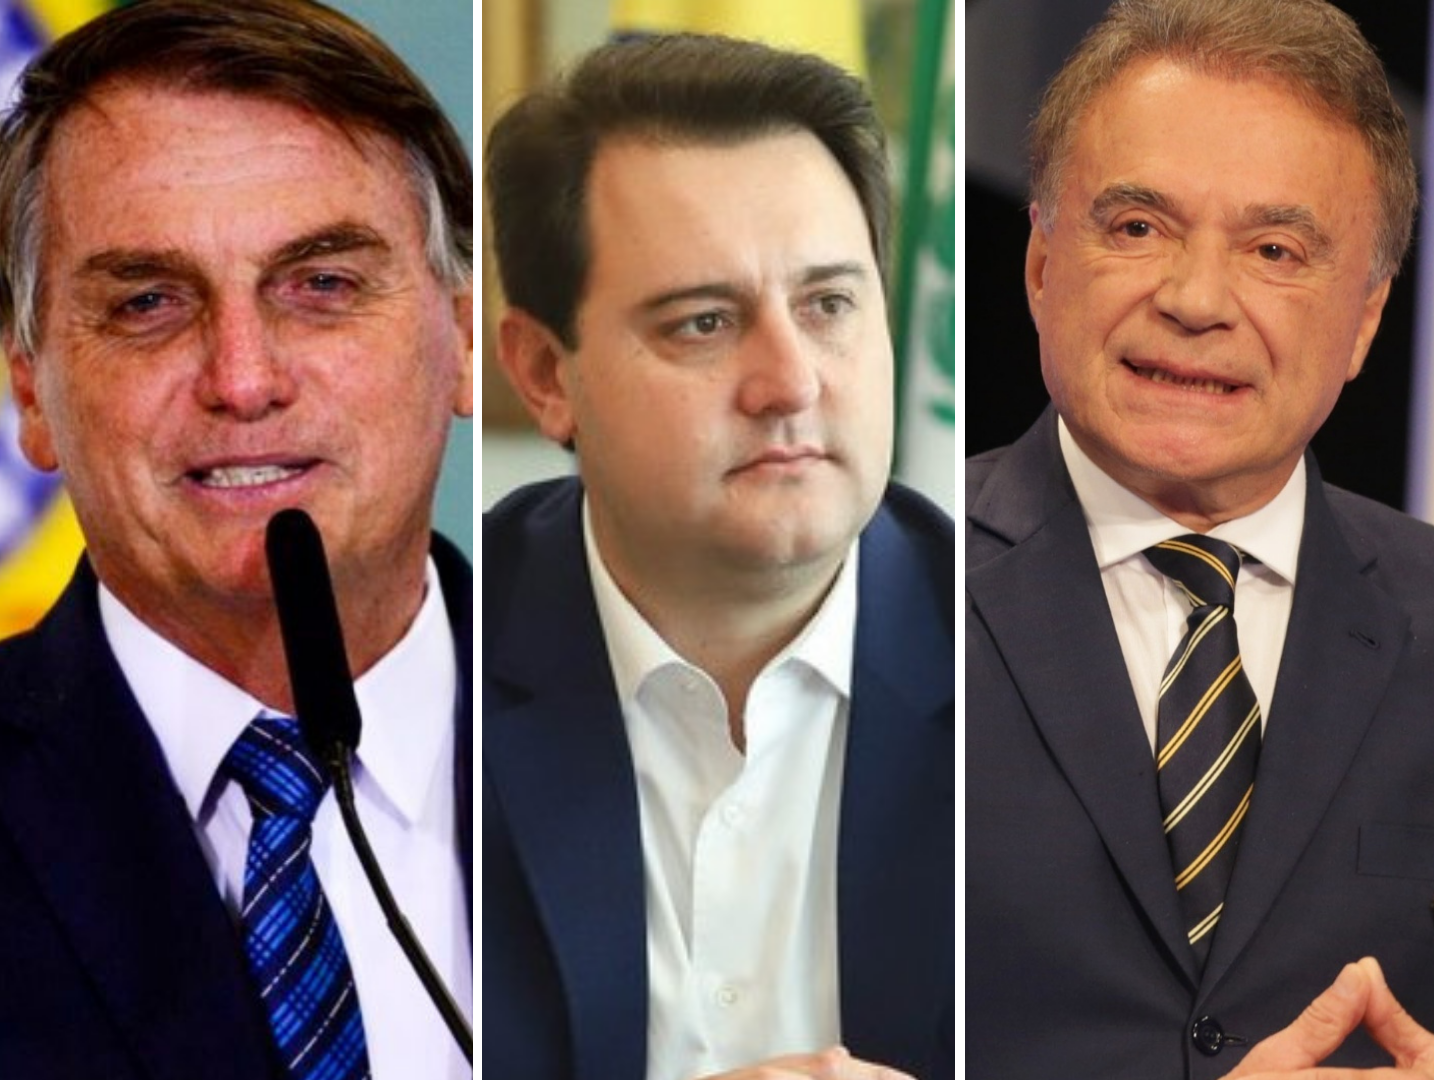 Bolsonaro, Ratinho Jr e Alvaro lideram a corrida eleitoral no Paraná